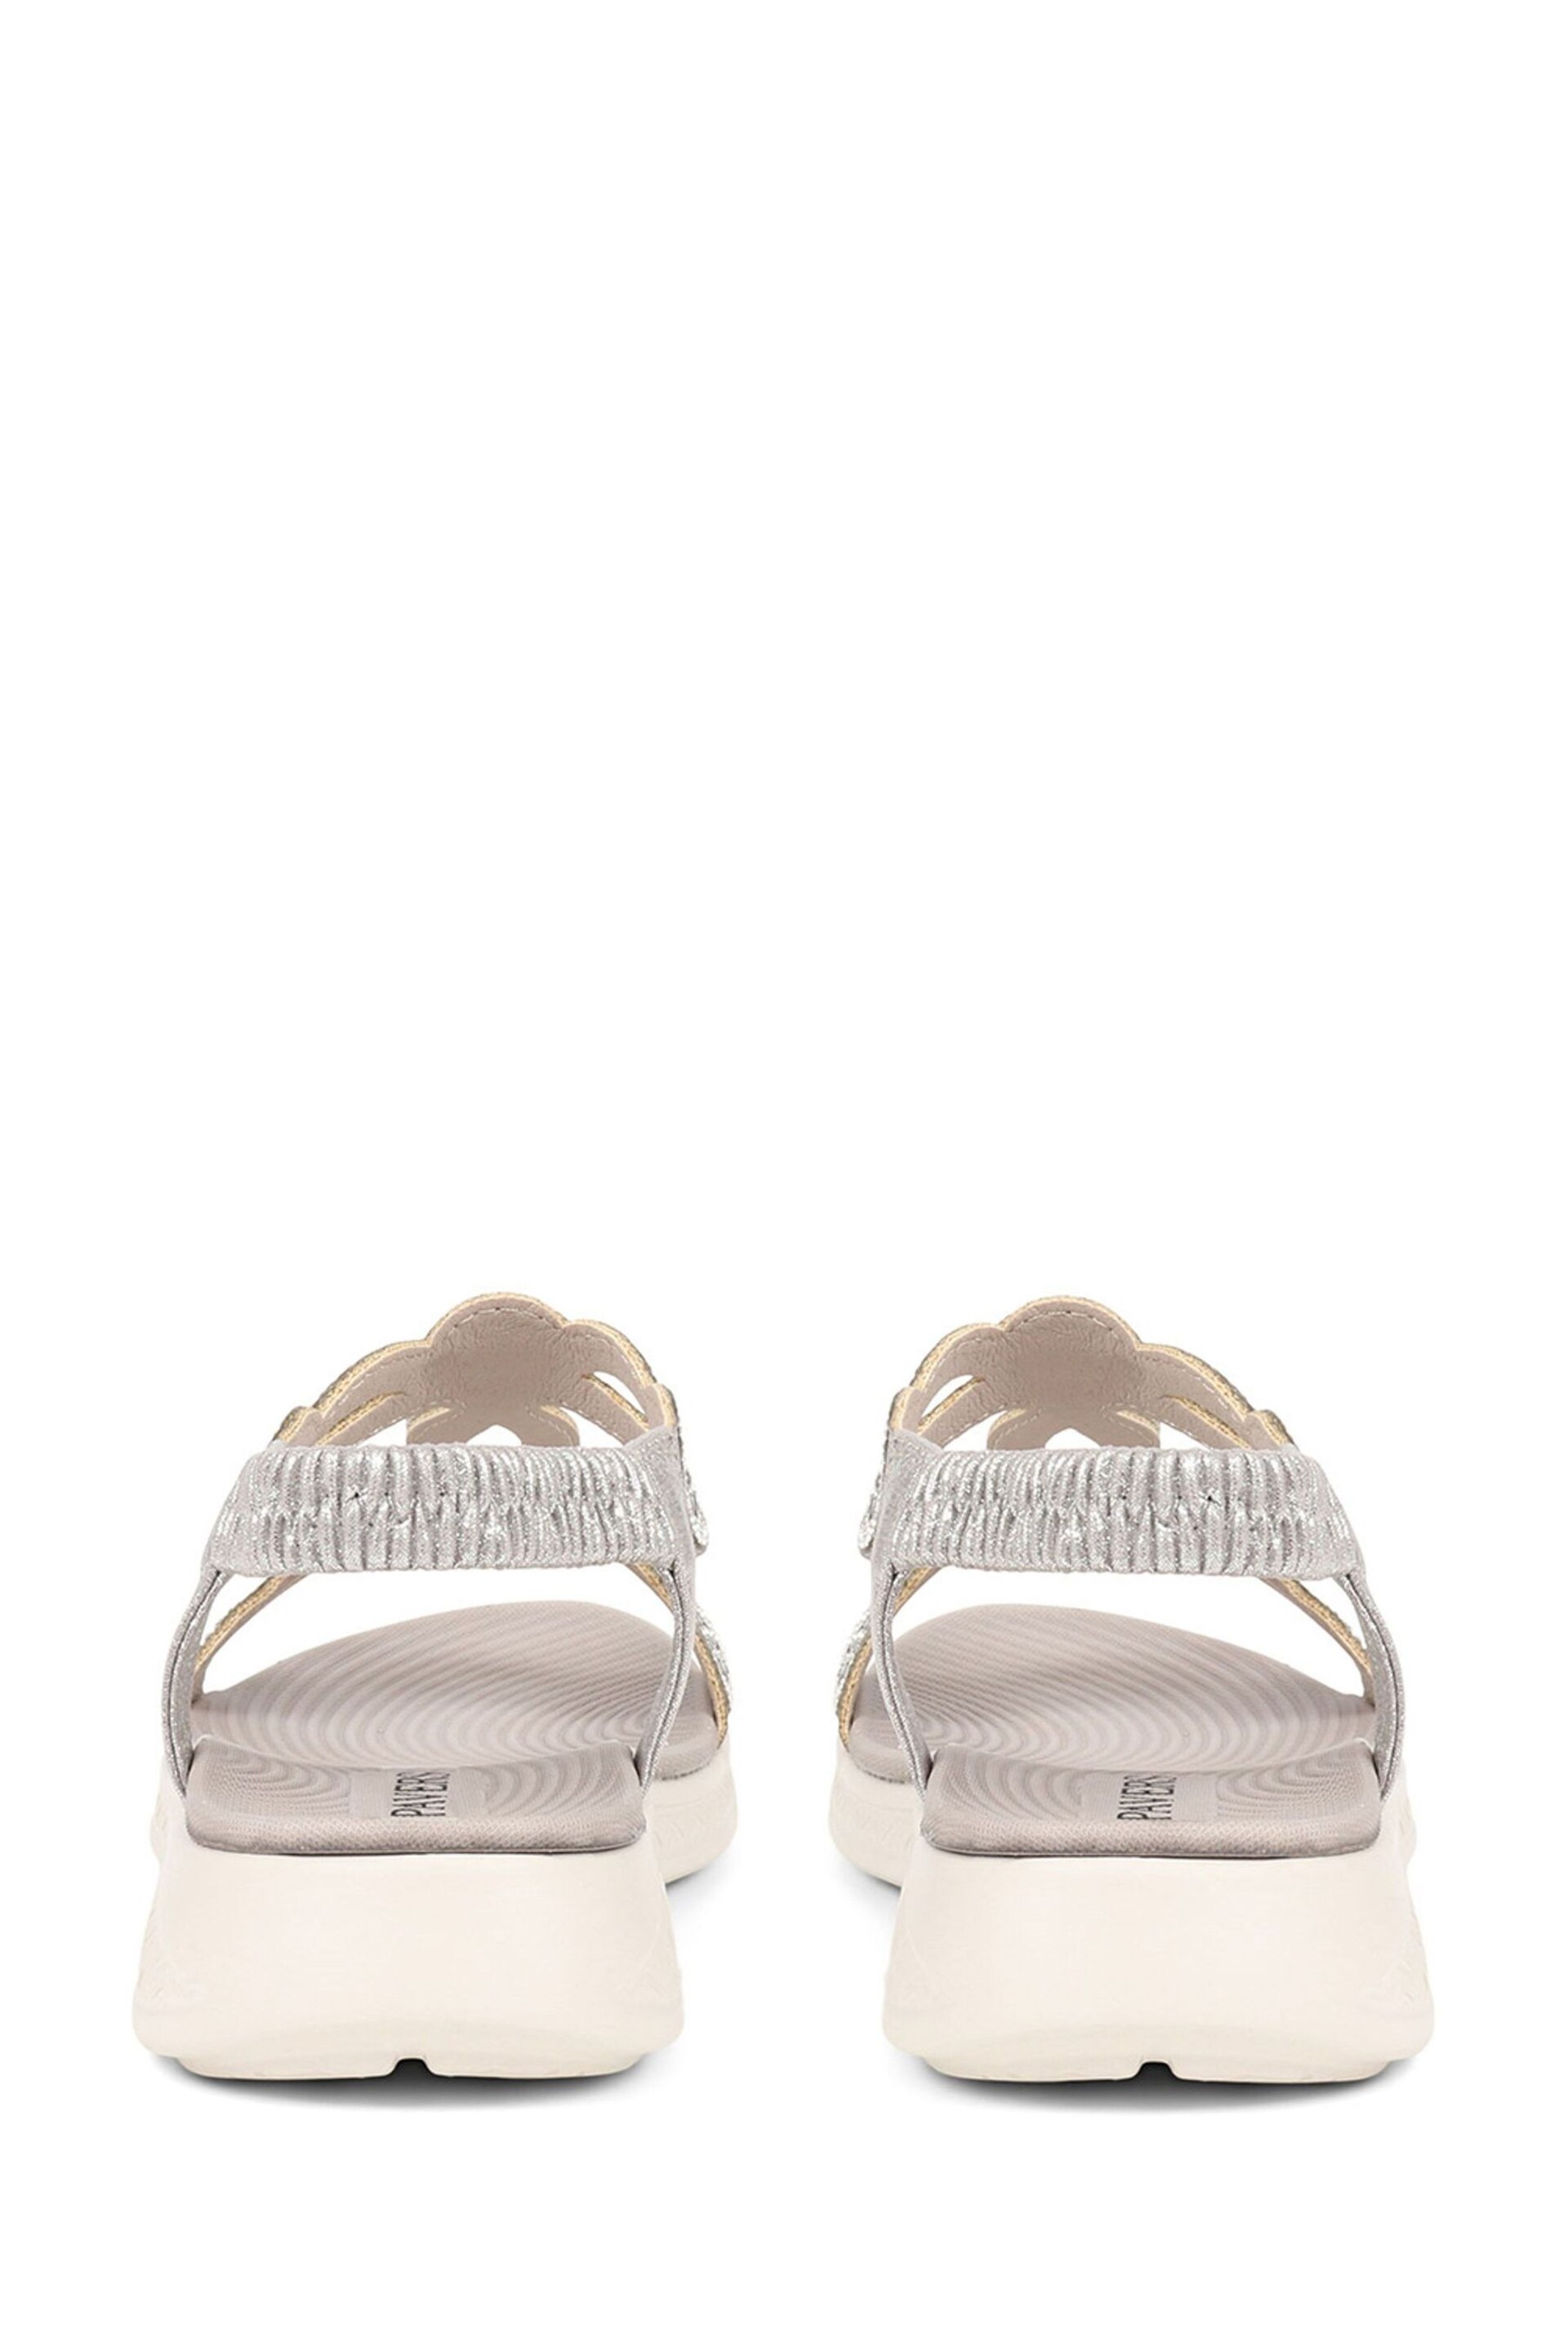 Pavers Grey Embellished Flatform Sandals - Image 3 of 5